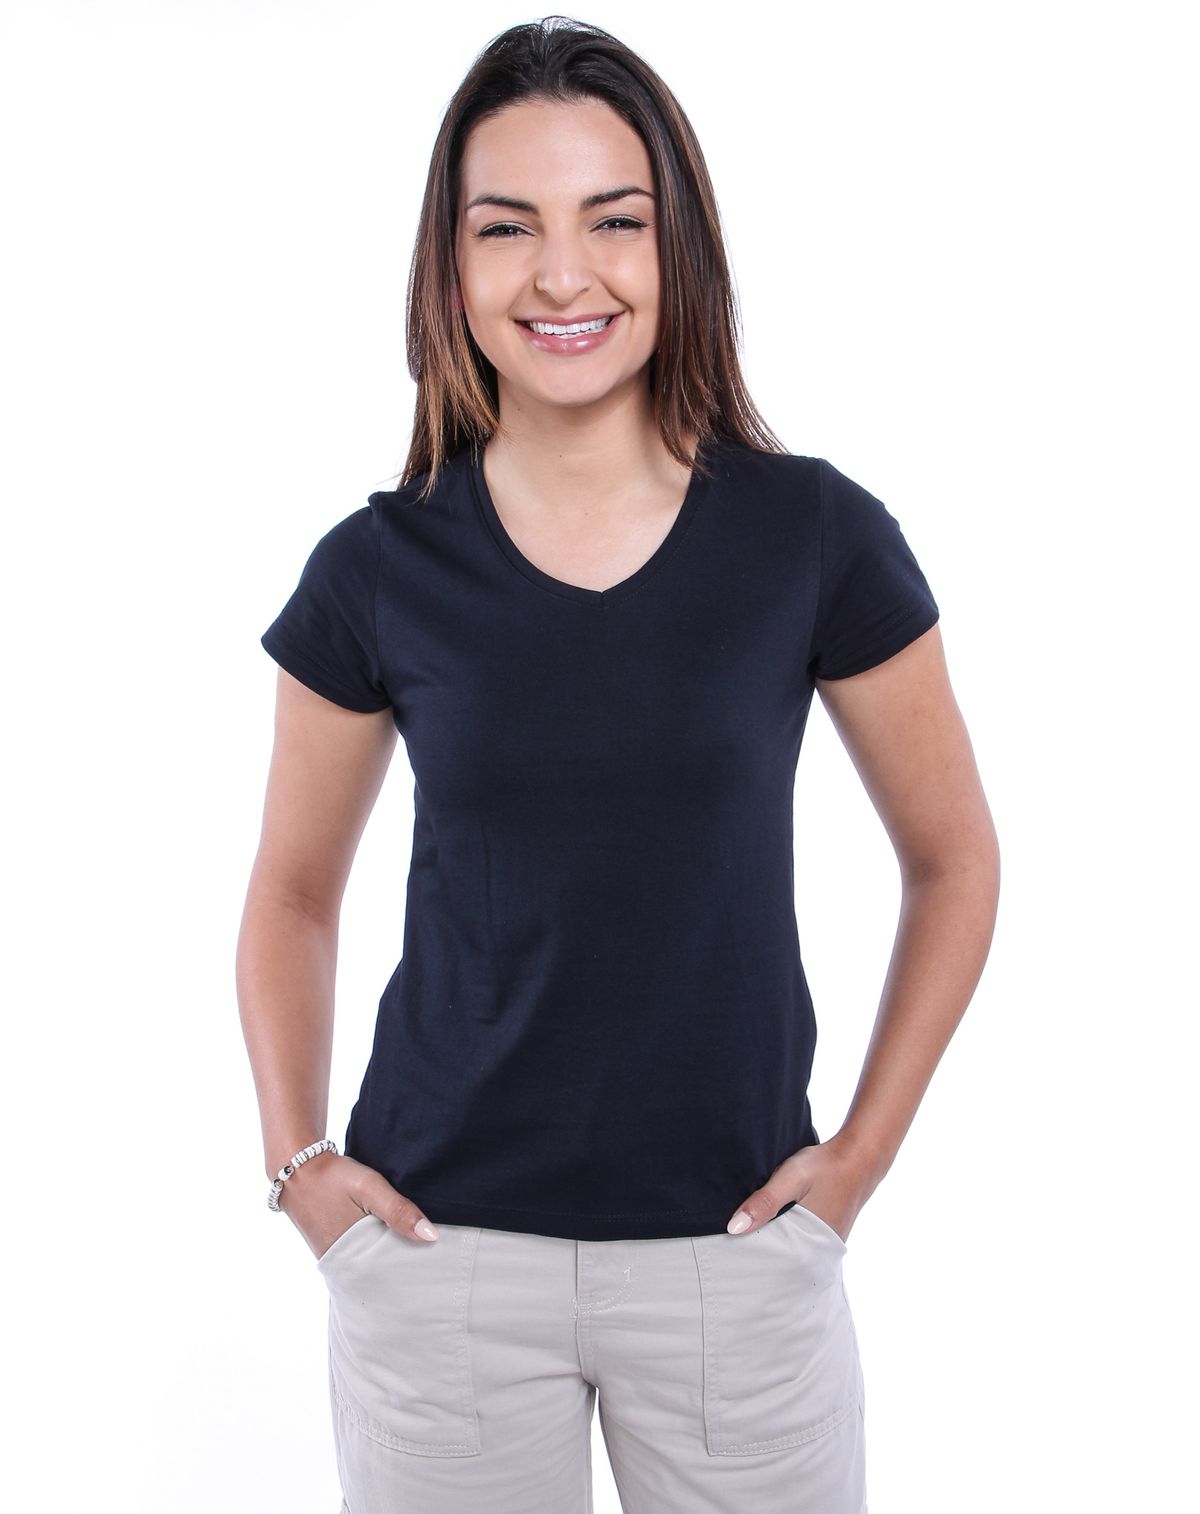 528282001-camiseta-basica-feminina-decote-v-preto-p-122